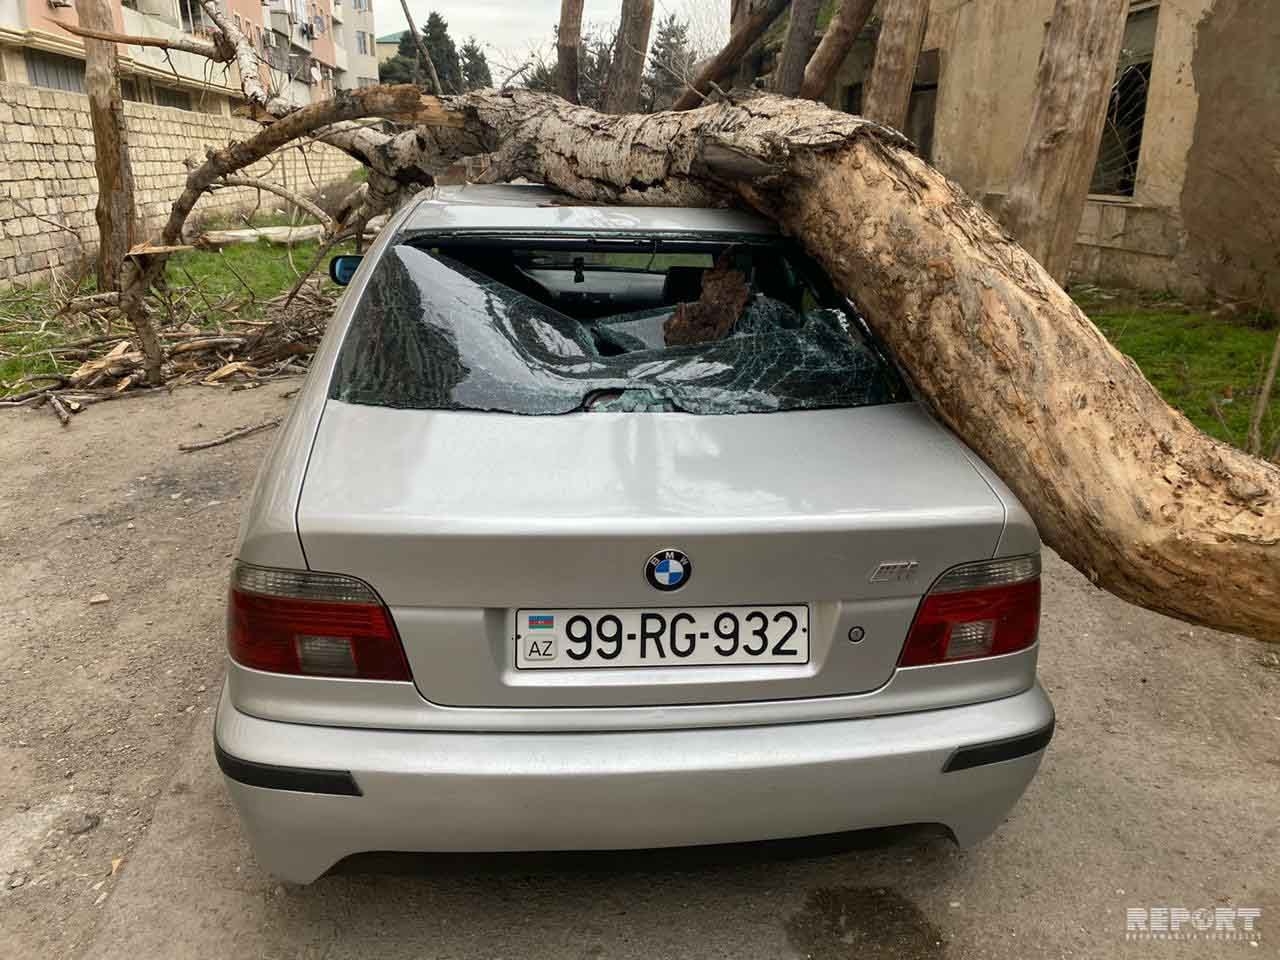 Во дворе бакинской больницы на автомобиль упало дерево - ВИДЕО